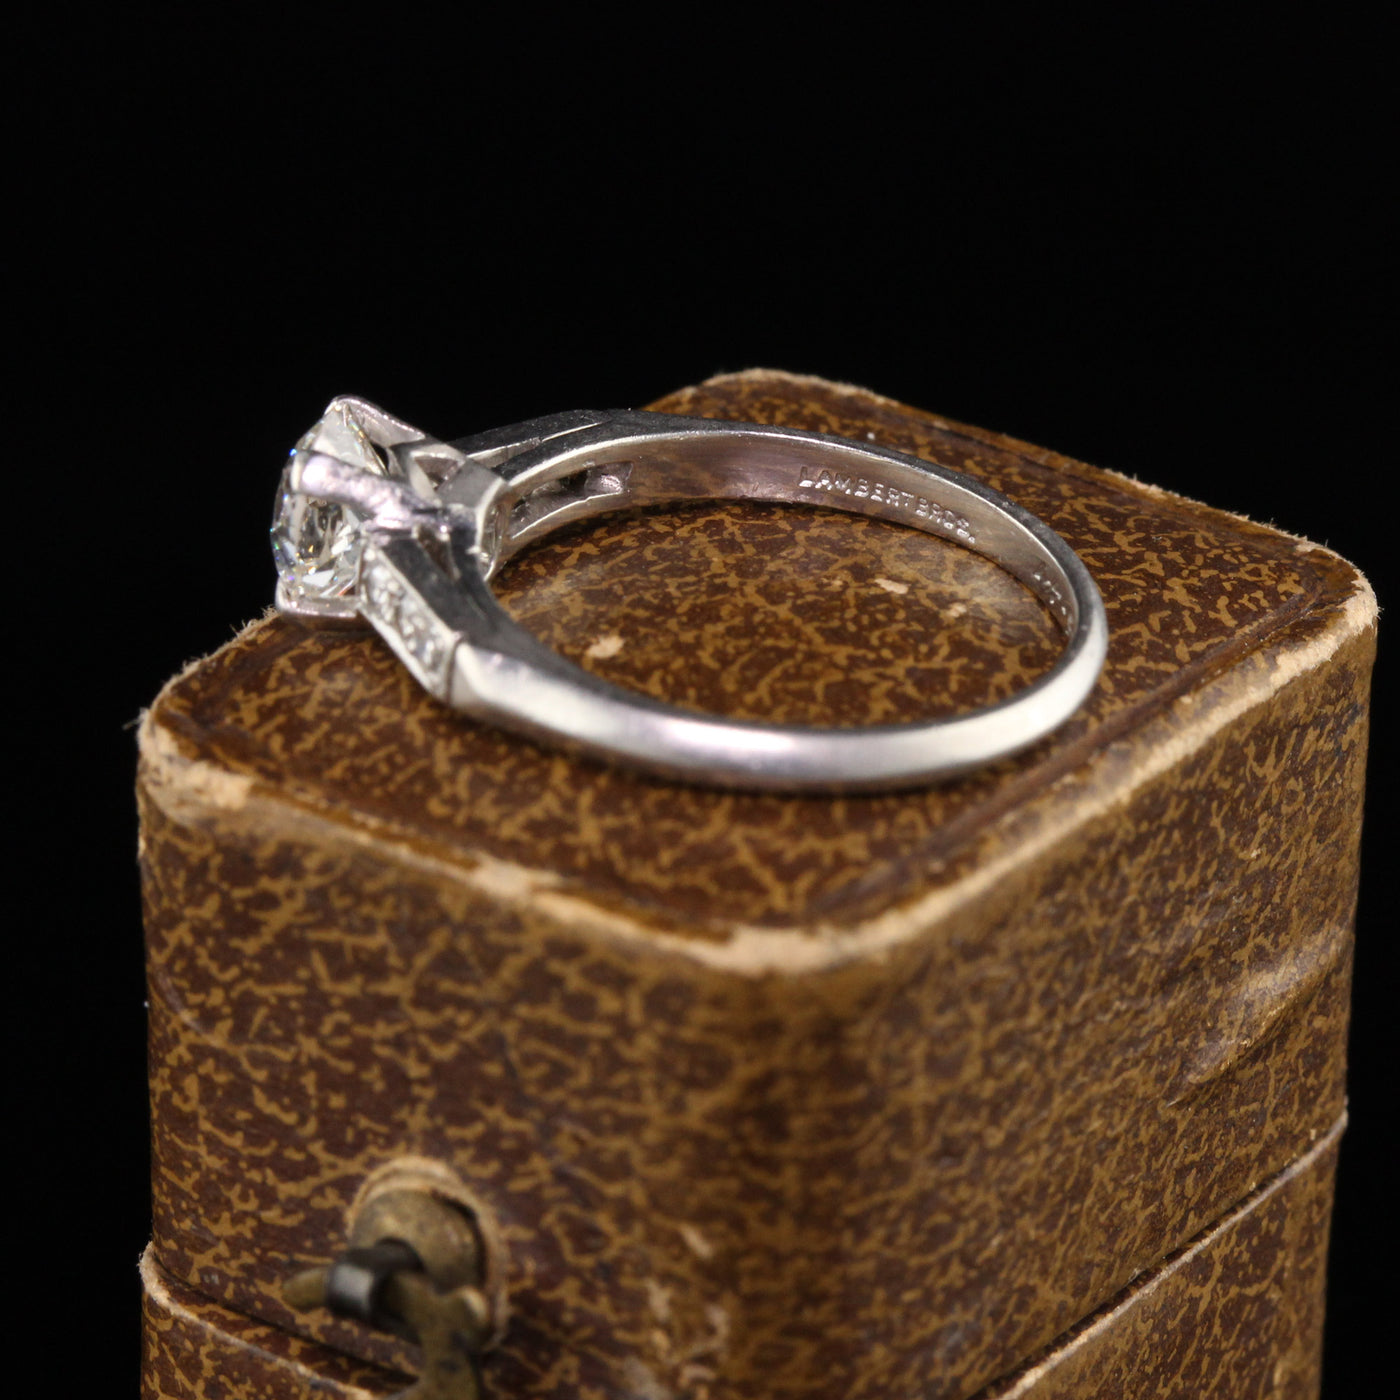 Antique Art Deco Lambert Bros Platinum Old Mine Diamond Engagement Ring